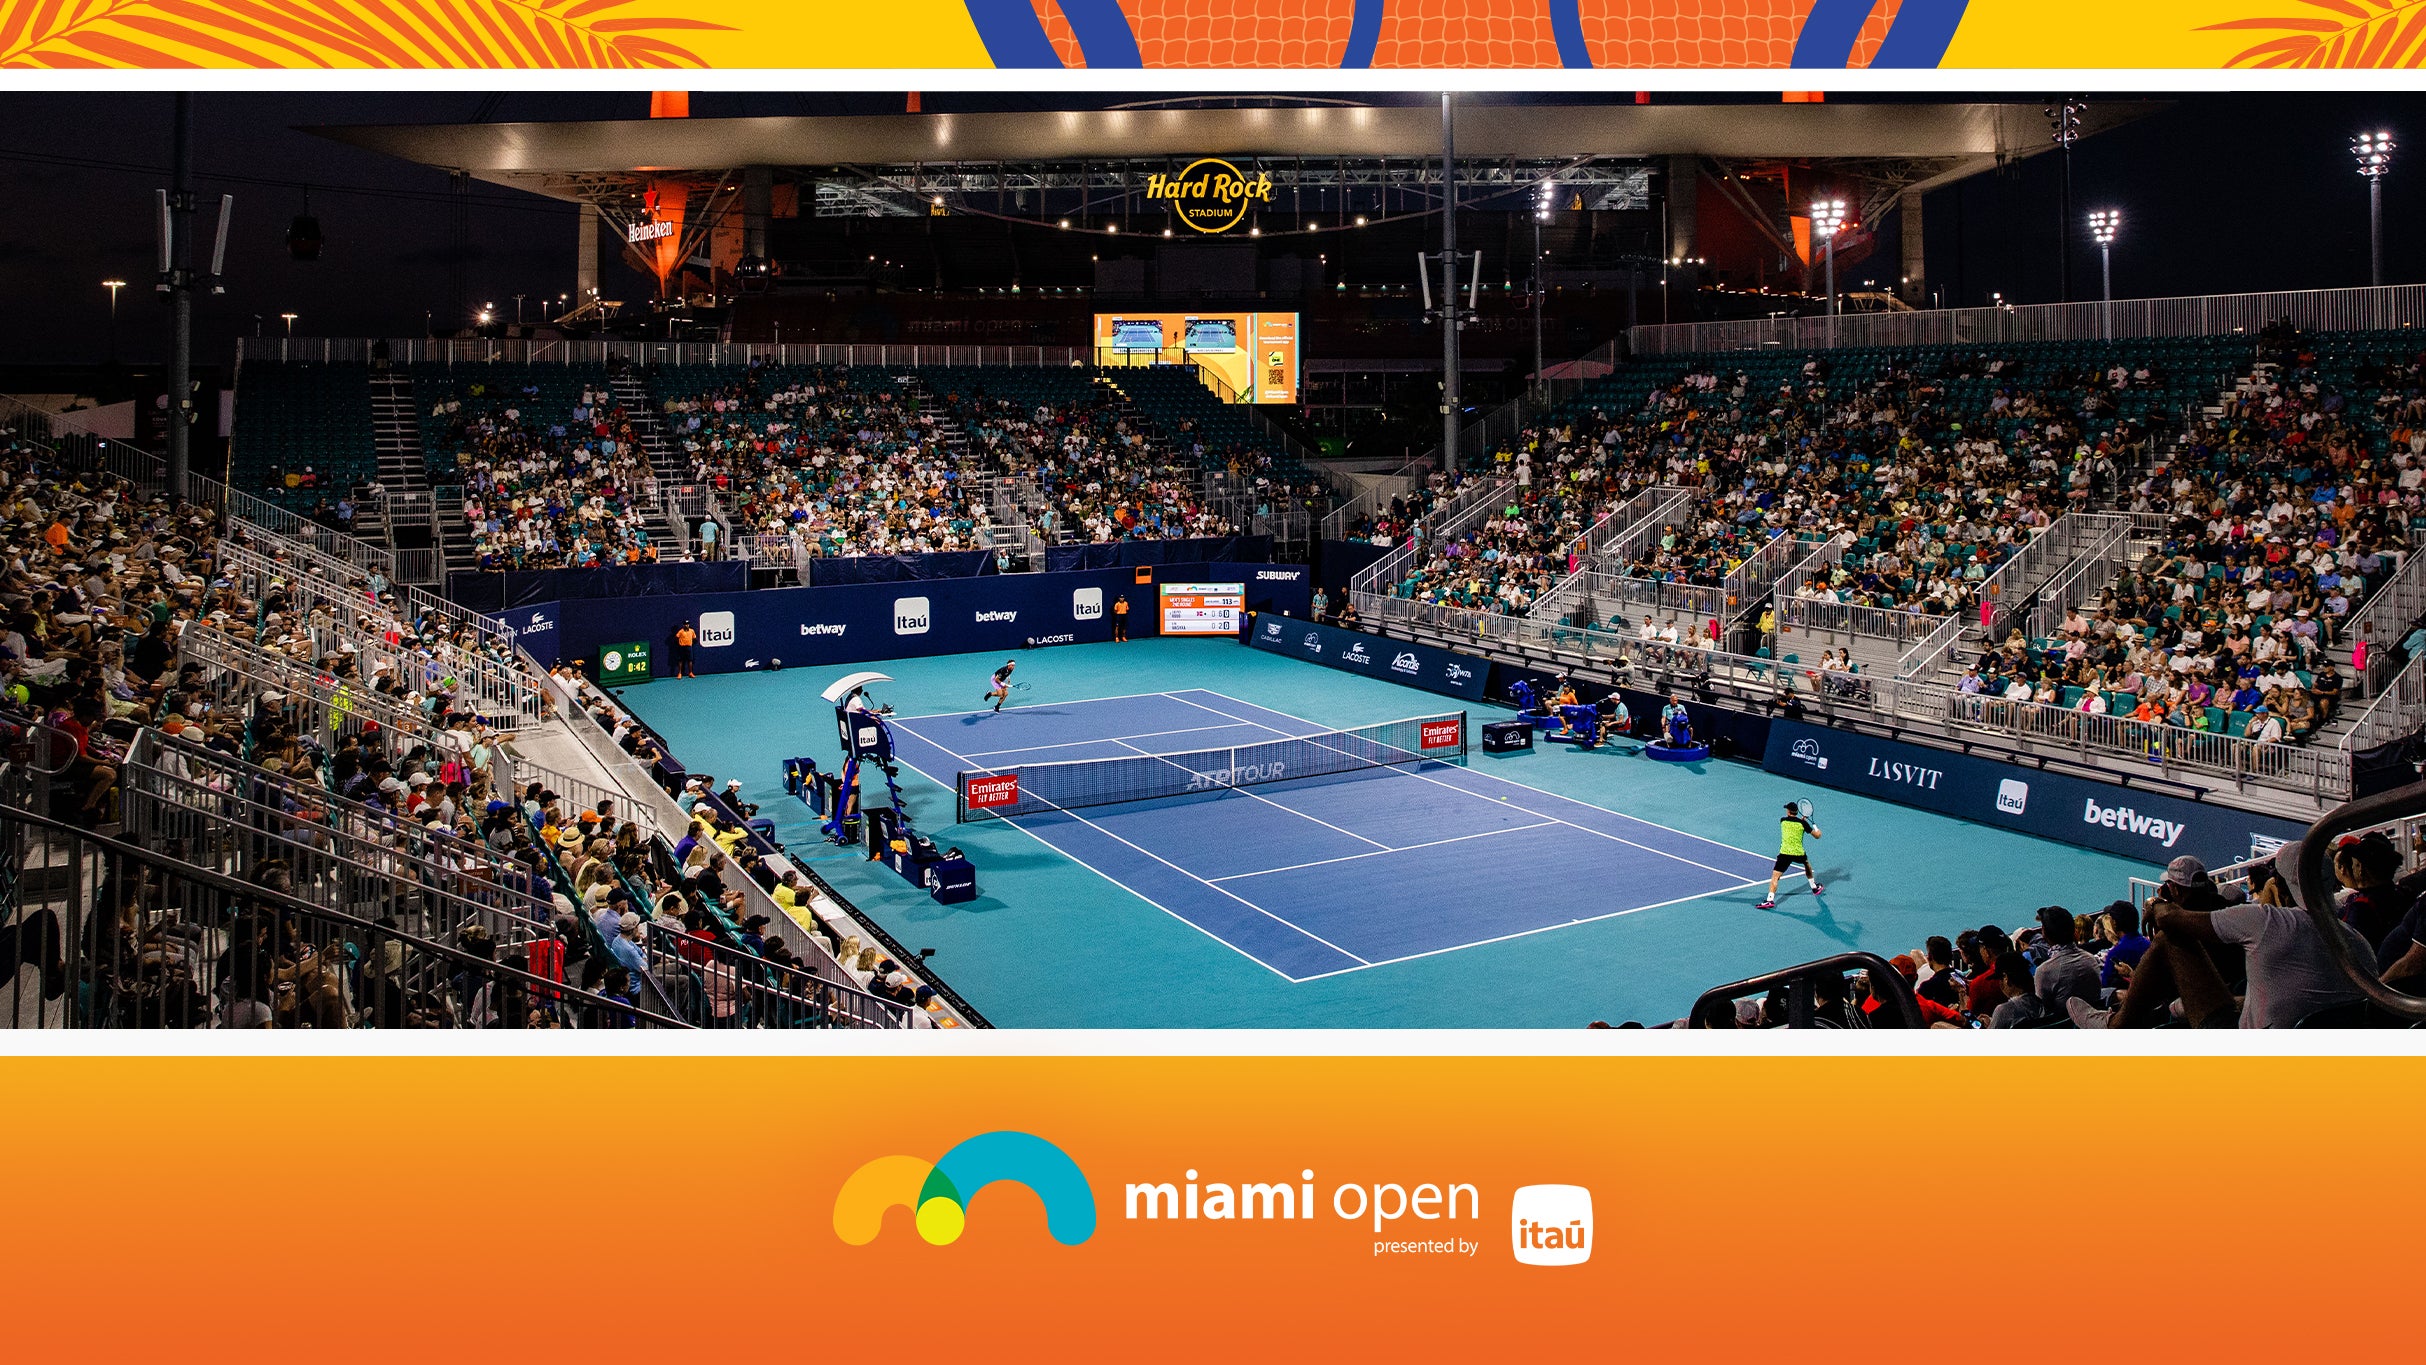 Miami Open - Grandstand Session 13 in Miami promo photo for Miami Open presale offer code